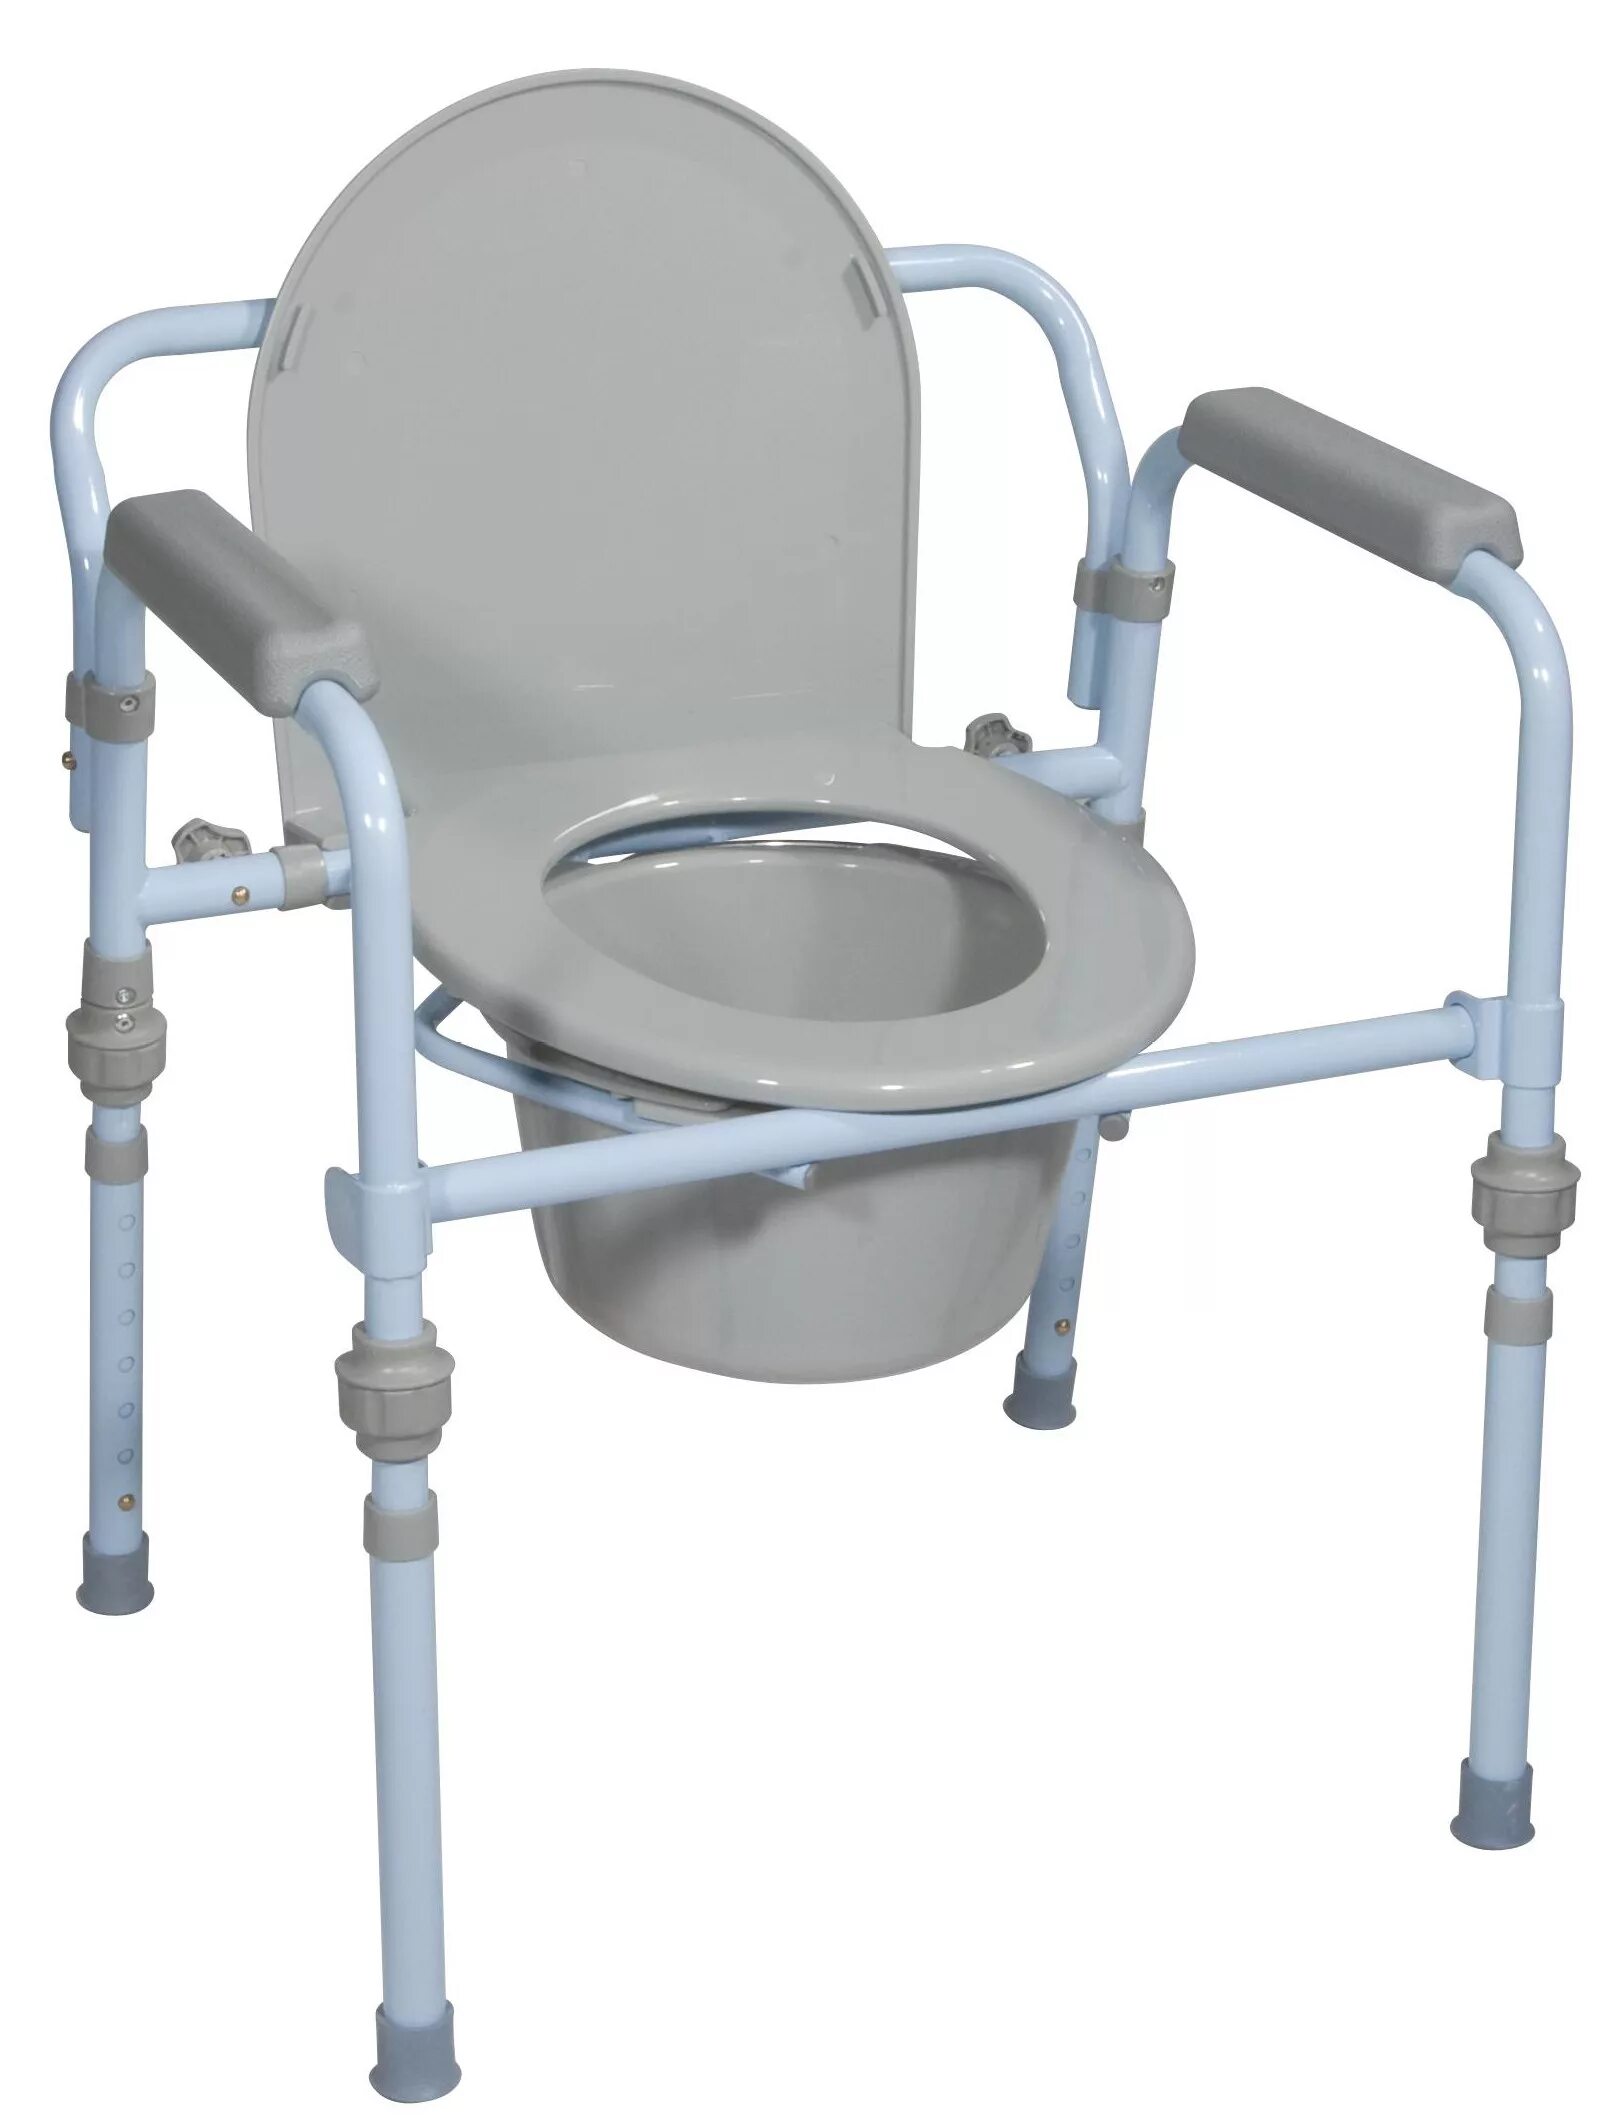 Купить санитарный стул для инвалидов. Кресло-туалет «Тривес» са668. Кресло-туалет Amrus amcb6803. Кресло стул туалетный ky896. MNF 08.2018 кресло туалет.